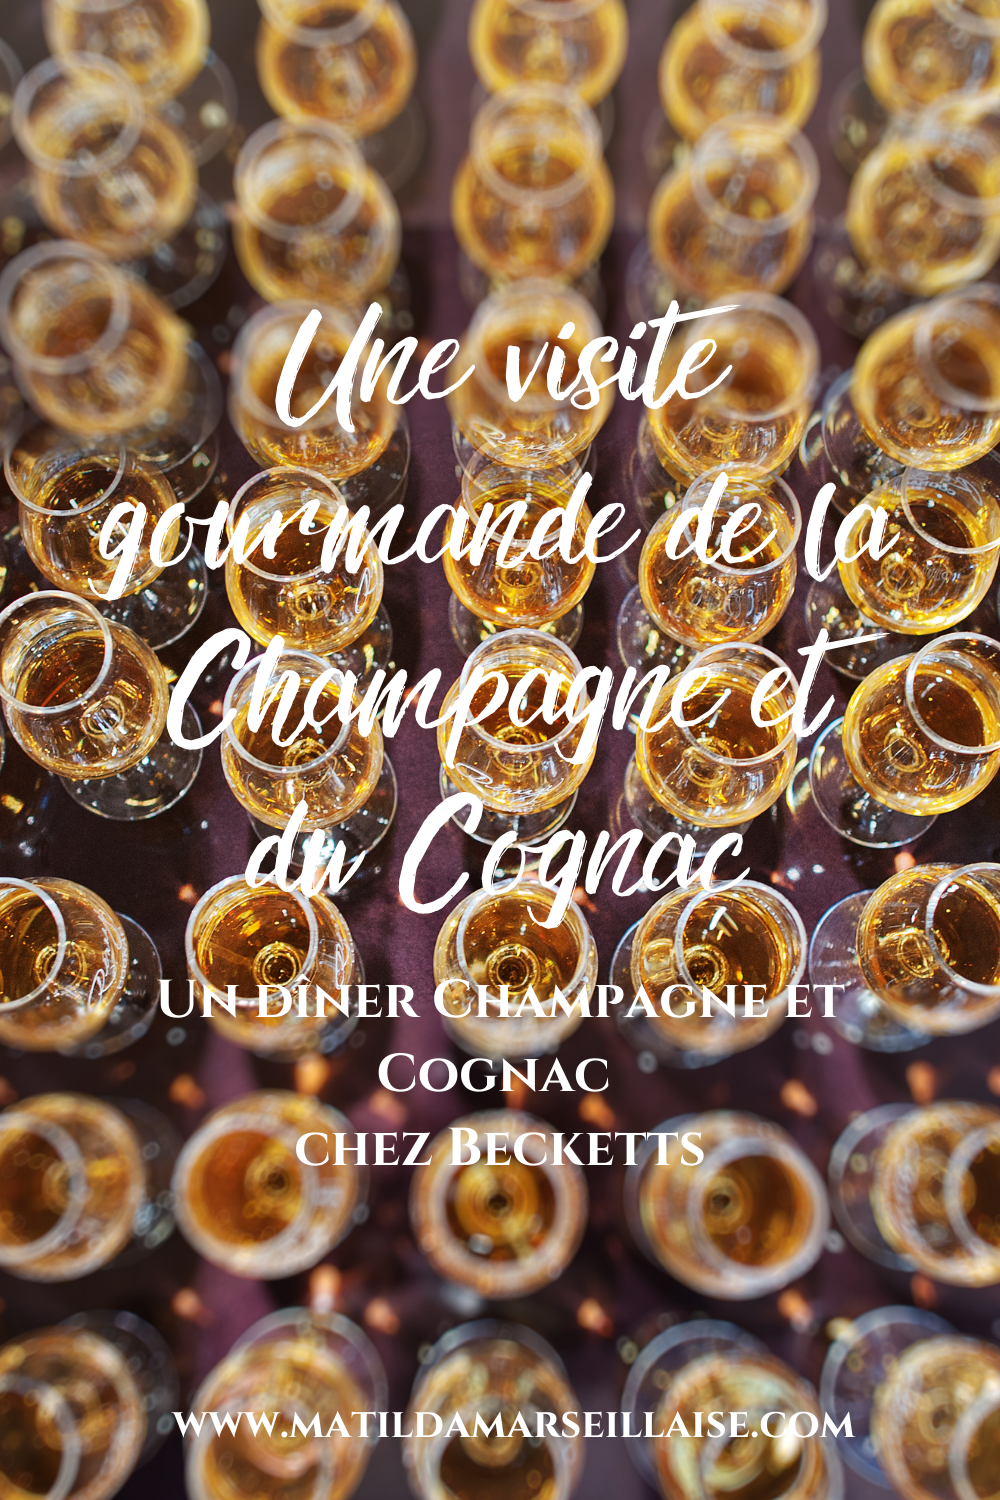 Beckett's diner au champagne et au cognac